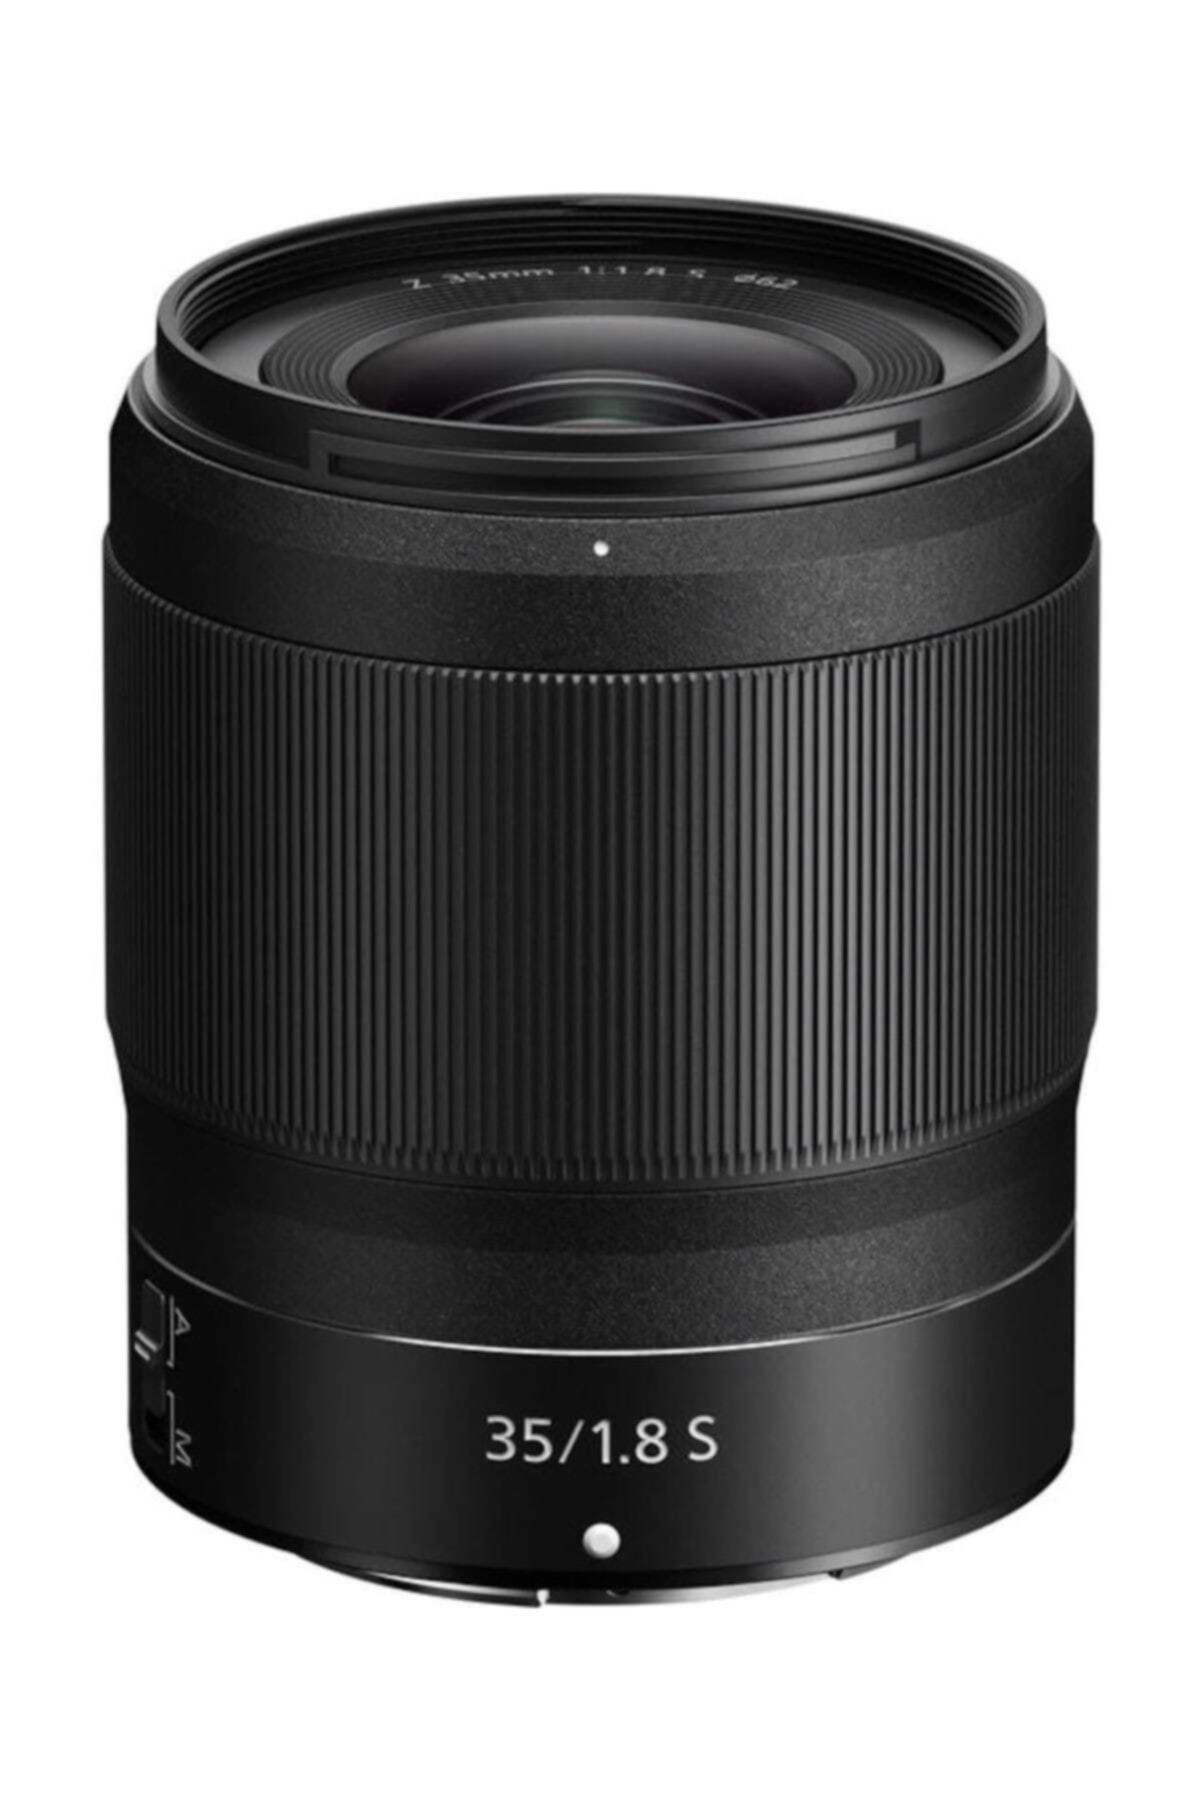 Nikon Z 35mm f/1.8 S Aynasız Makine Lensi (Karfo Karacasulu Garantili)